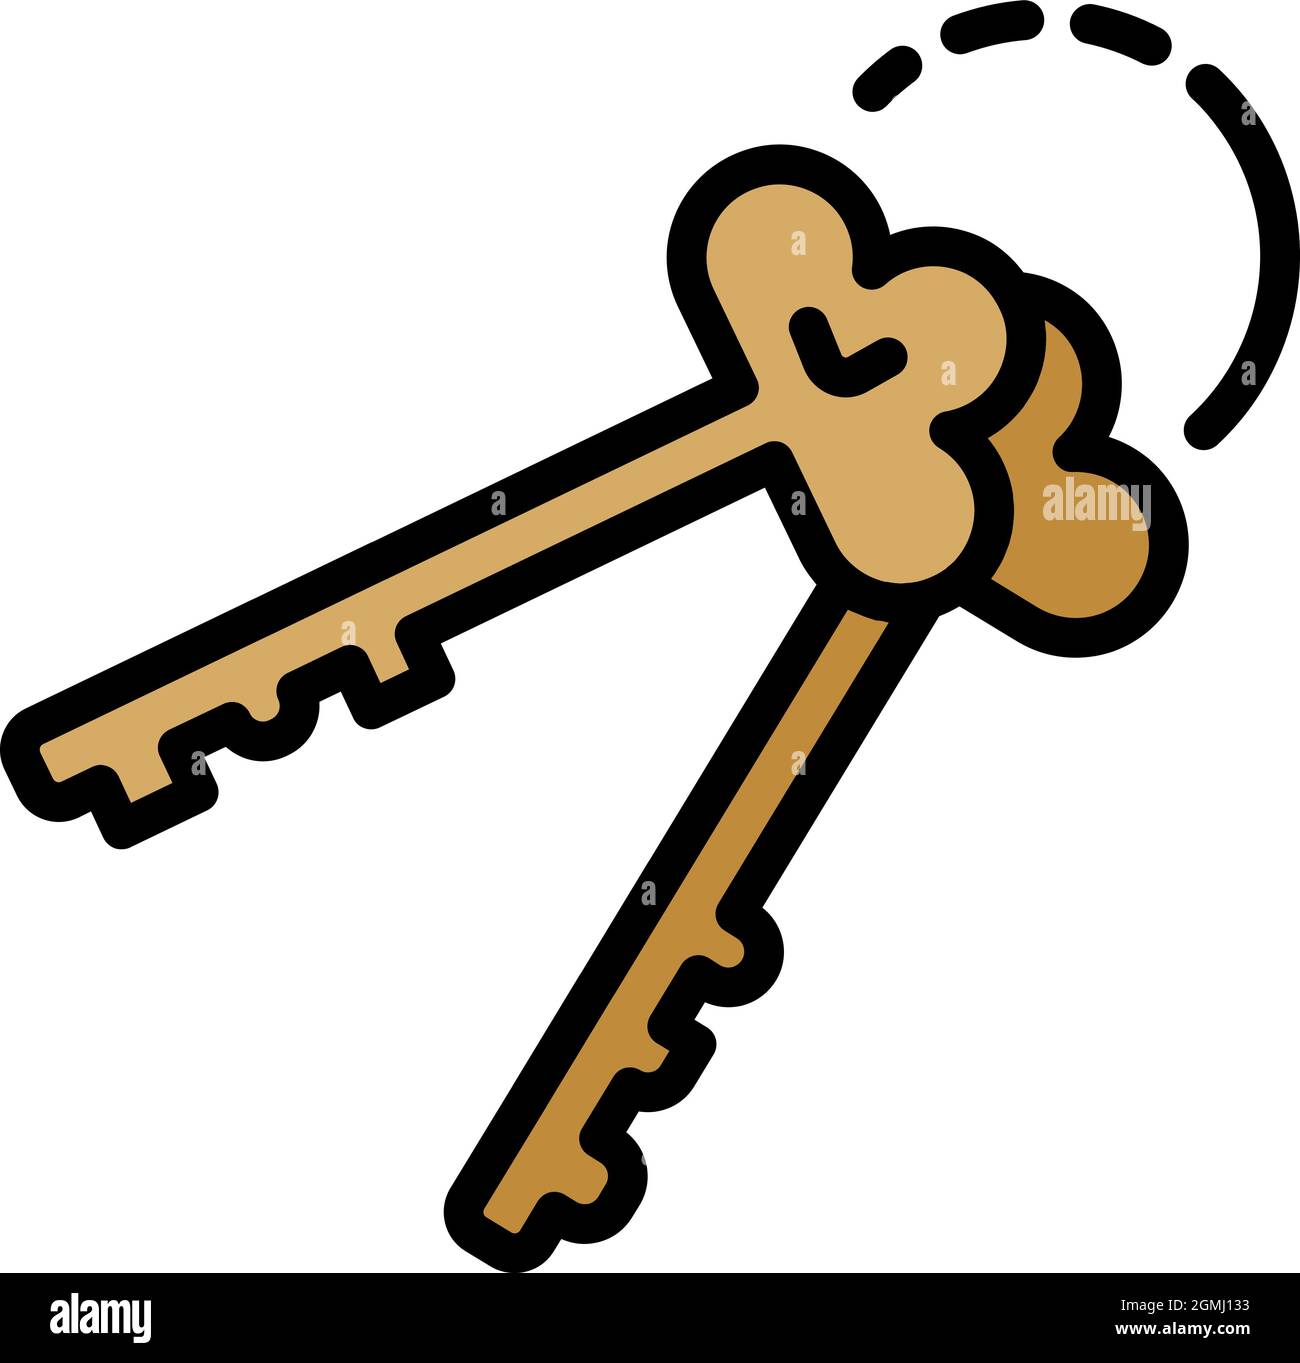 Symbol für Gefängnisschlüssel der Polizei. Skizzieren Polizei Gefängnis Schlüssel Vektor-Symbol Farbe flach isoliert Stock Vektor